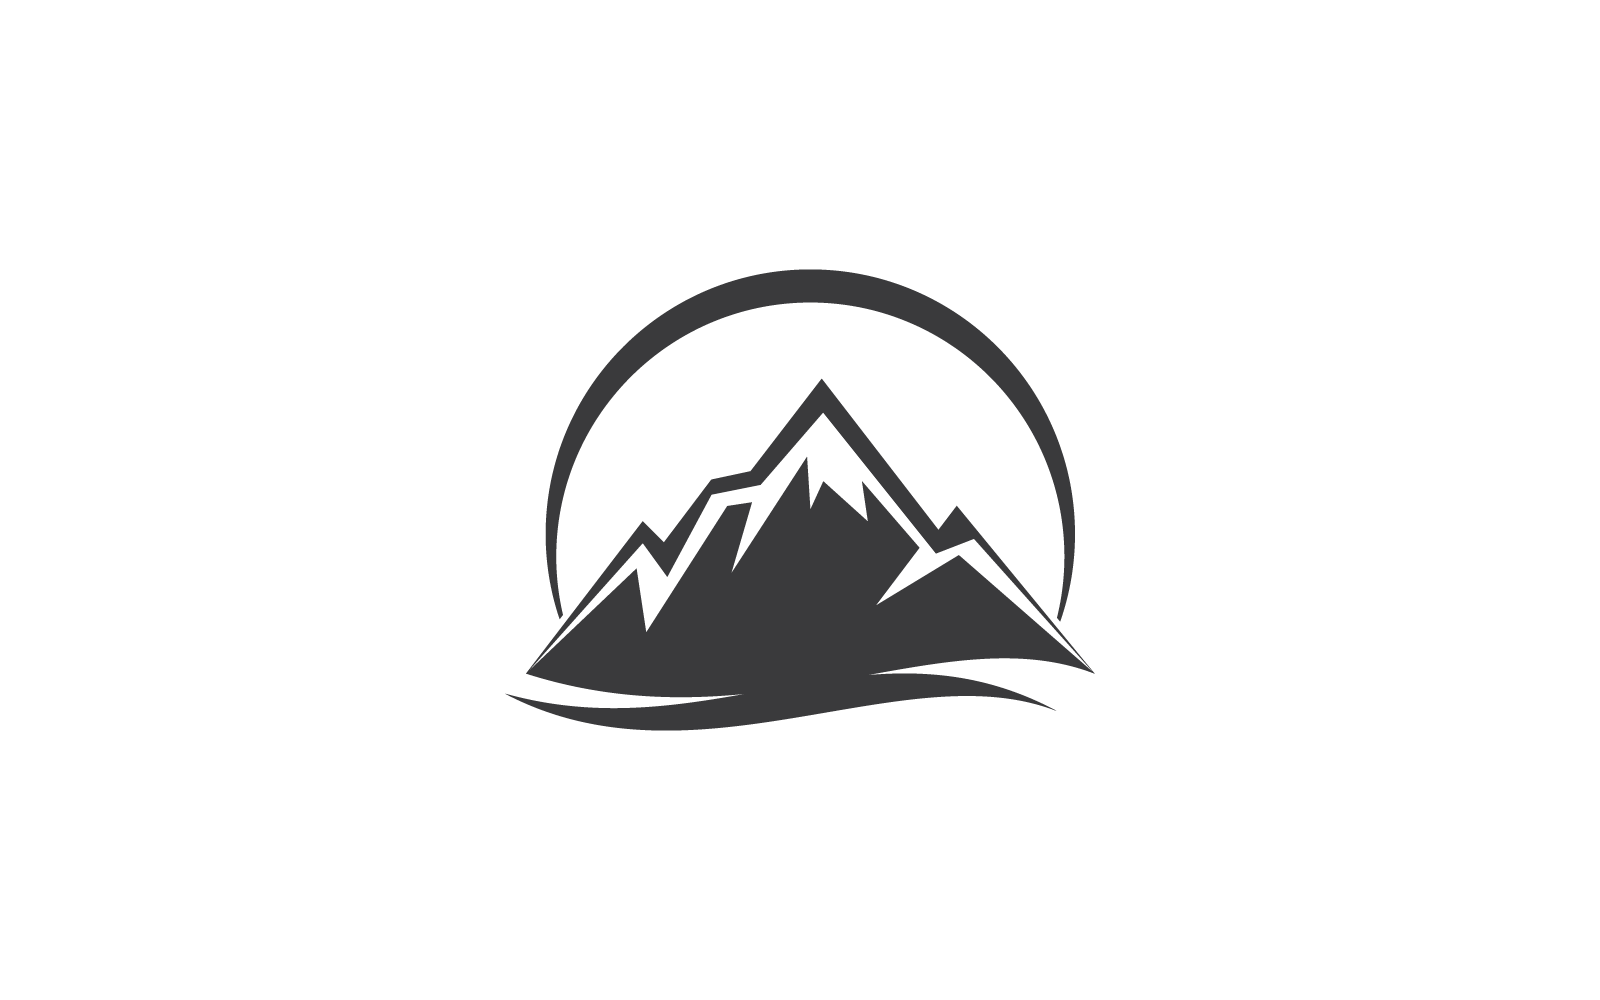 Mountain logo flat design icon vector template